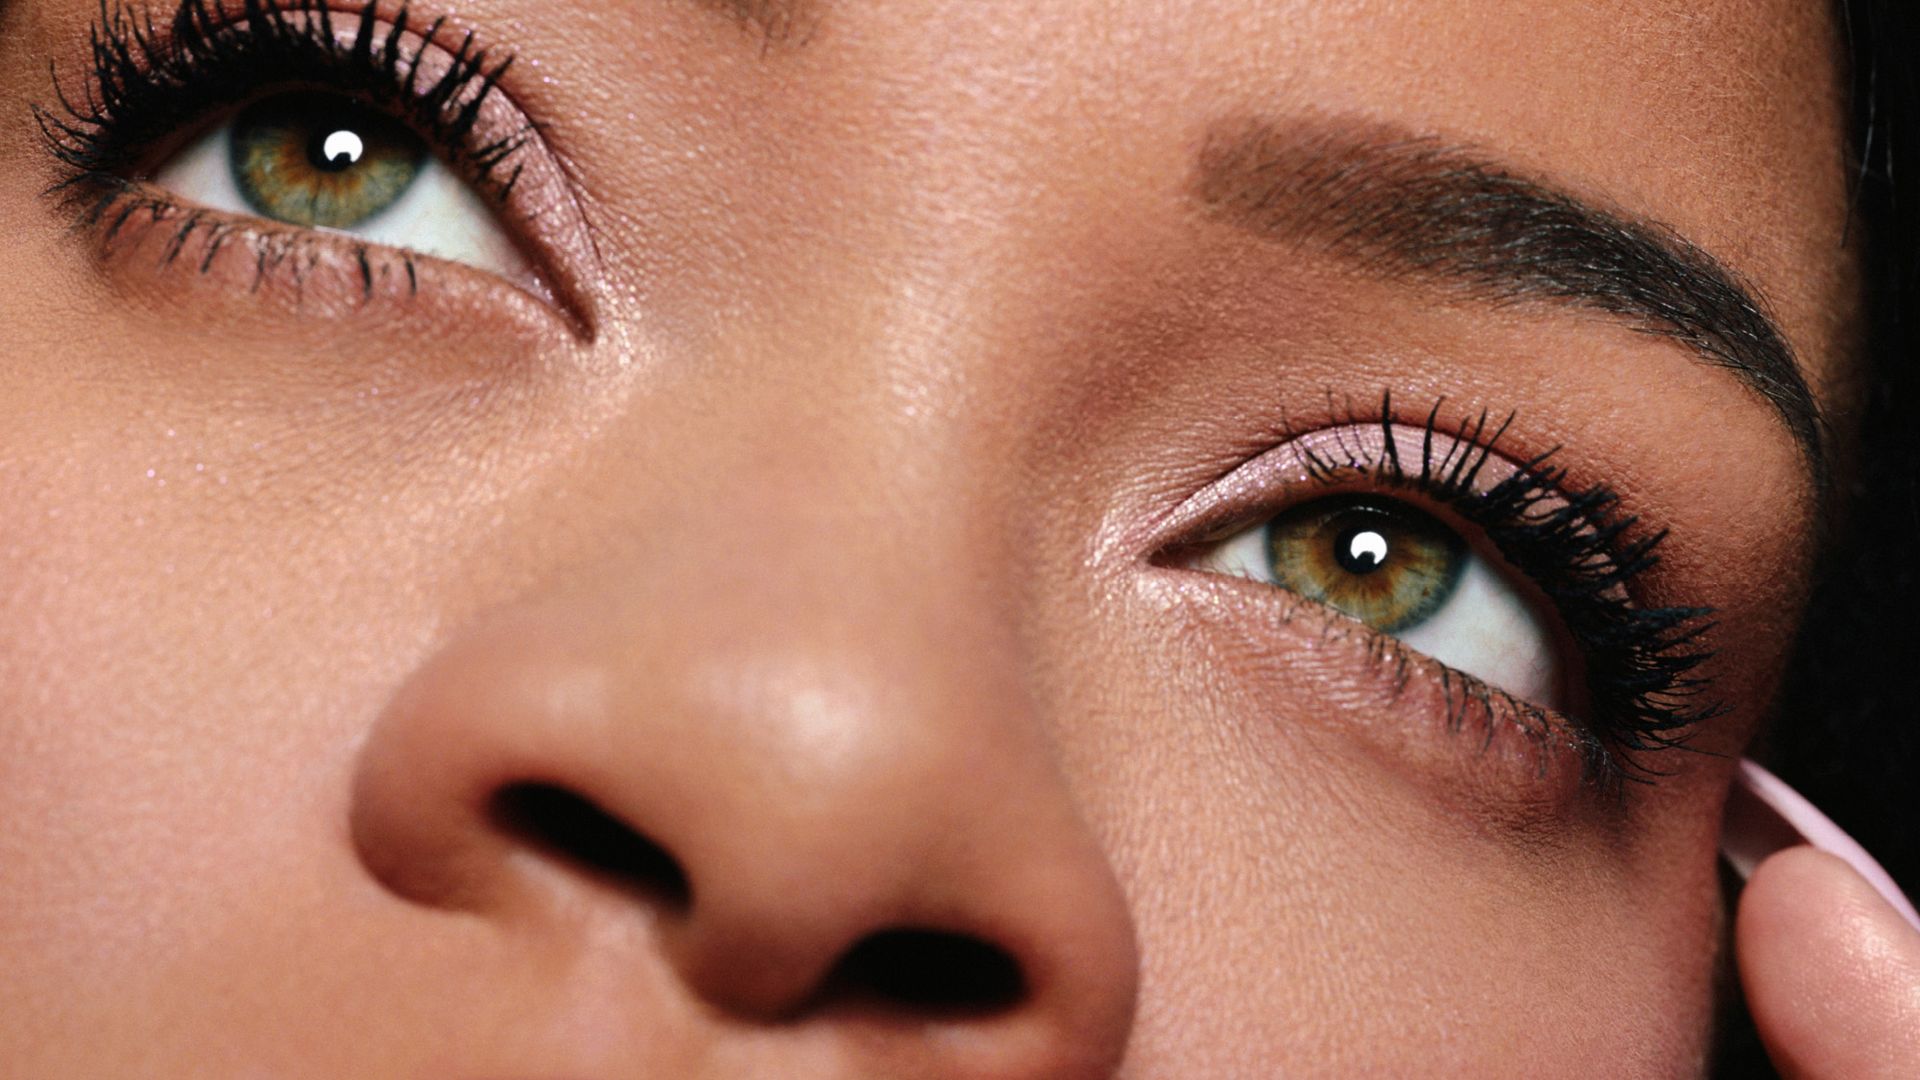 Rihanna wearing Fenty Beauty mascara